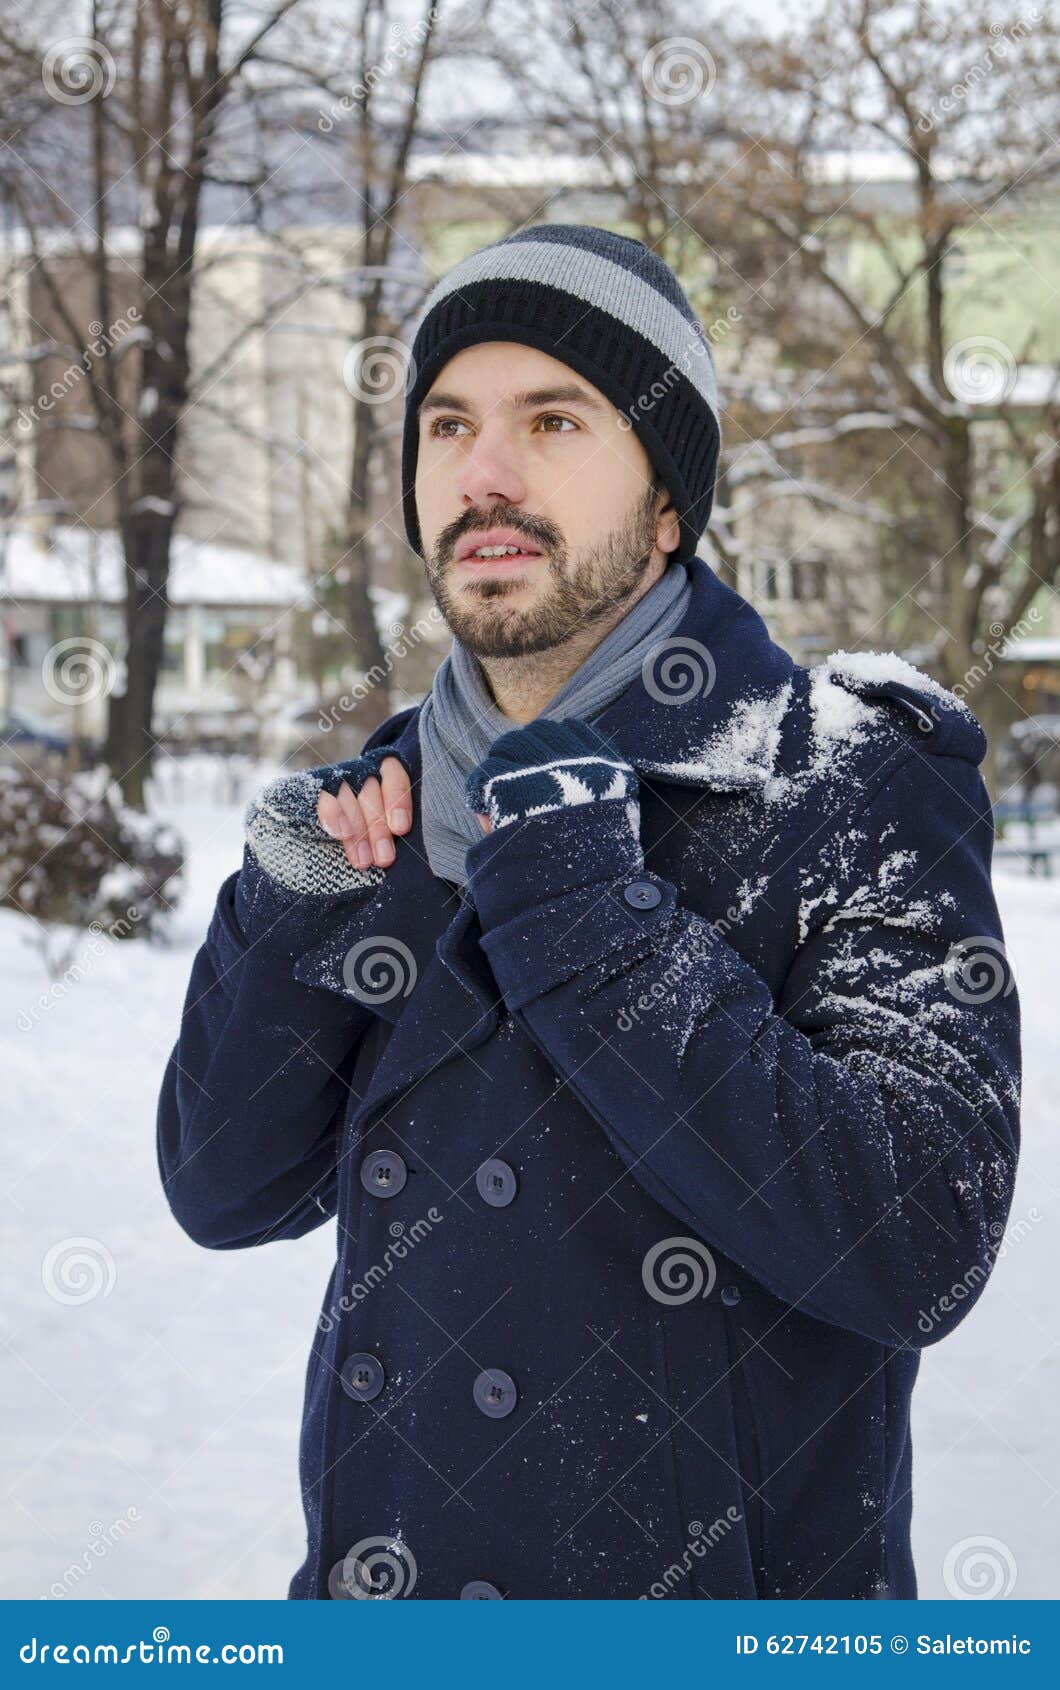 manteau de neige homme